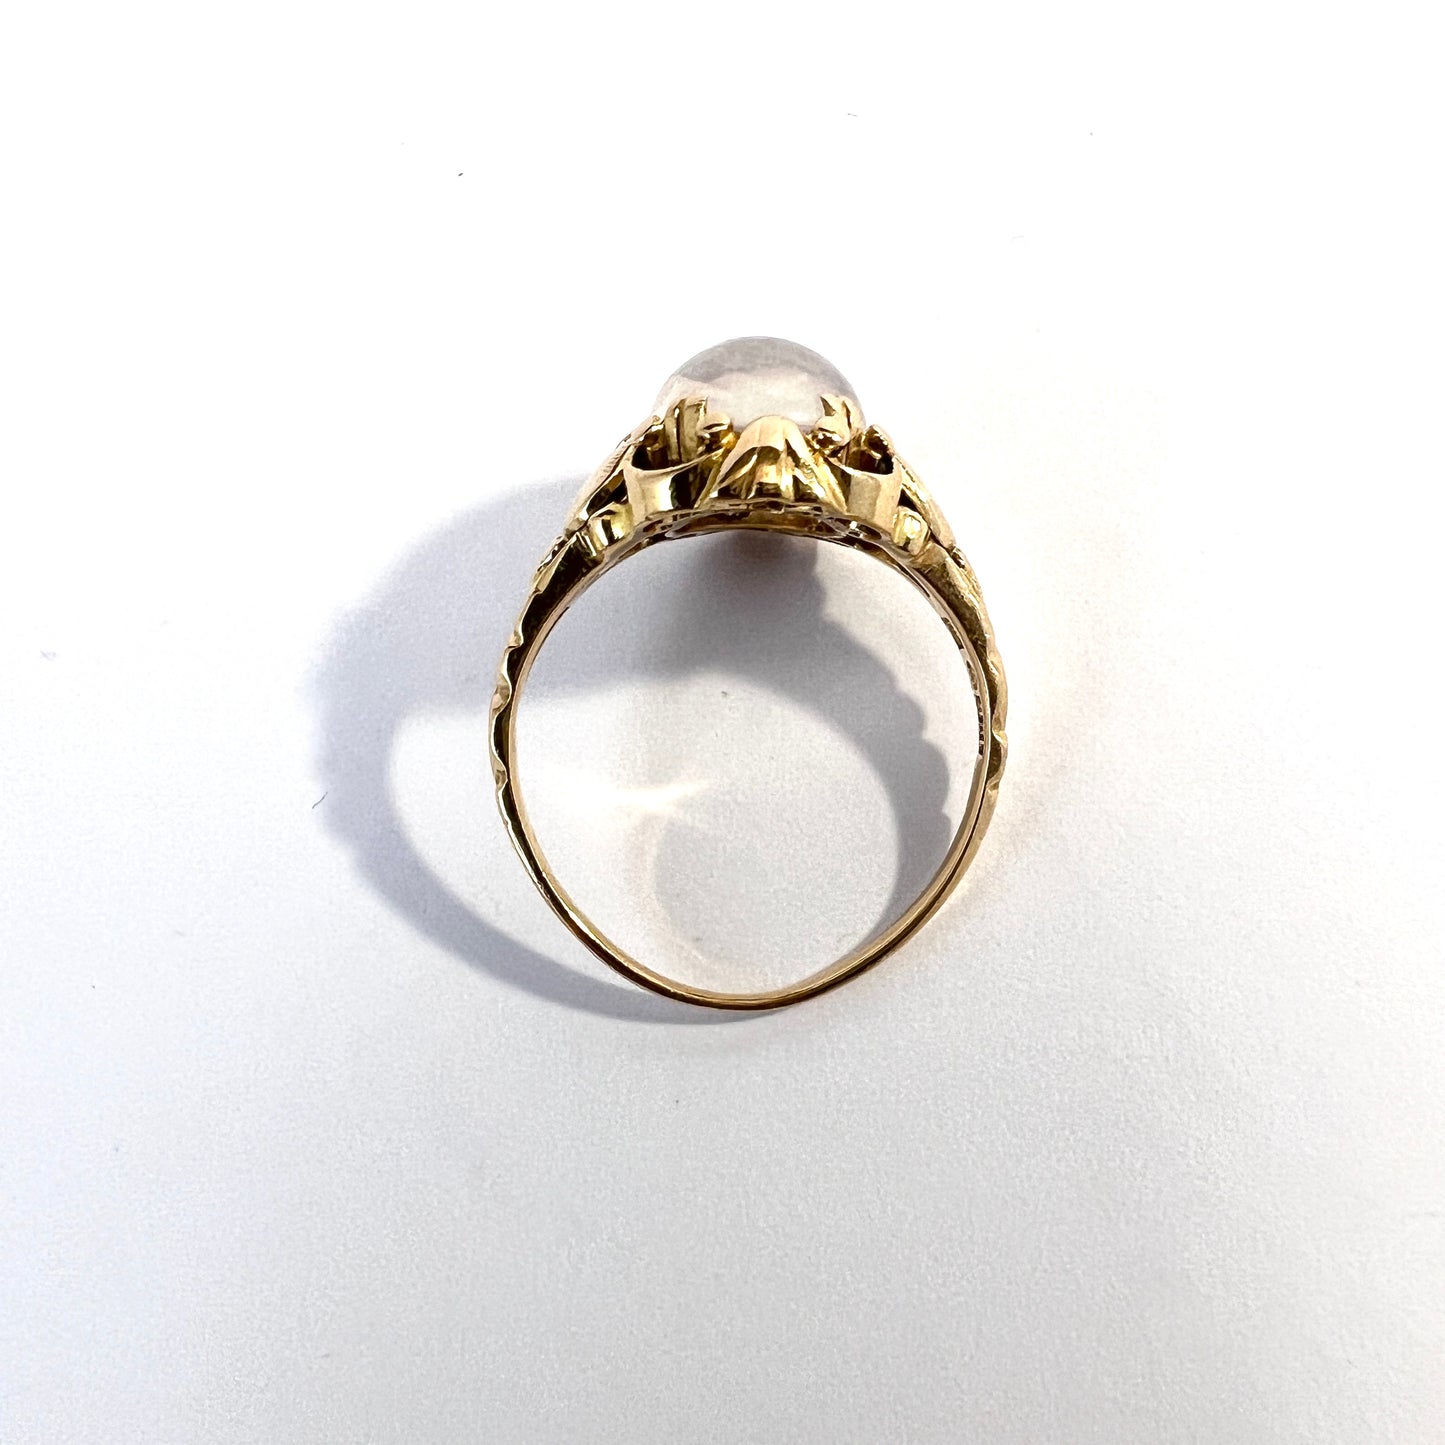 Ceson, Sweden 1954. Vintage 18k Gold Moonstone Ring